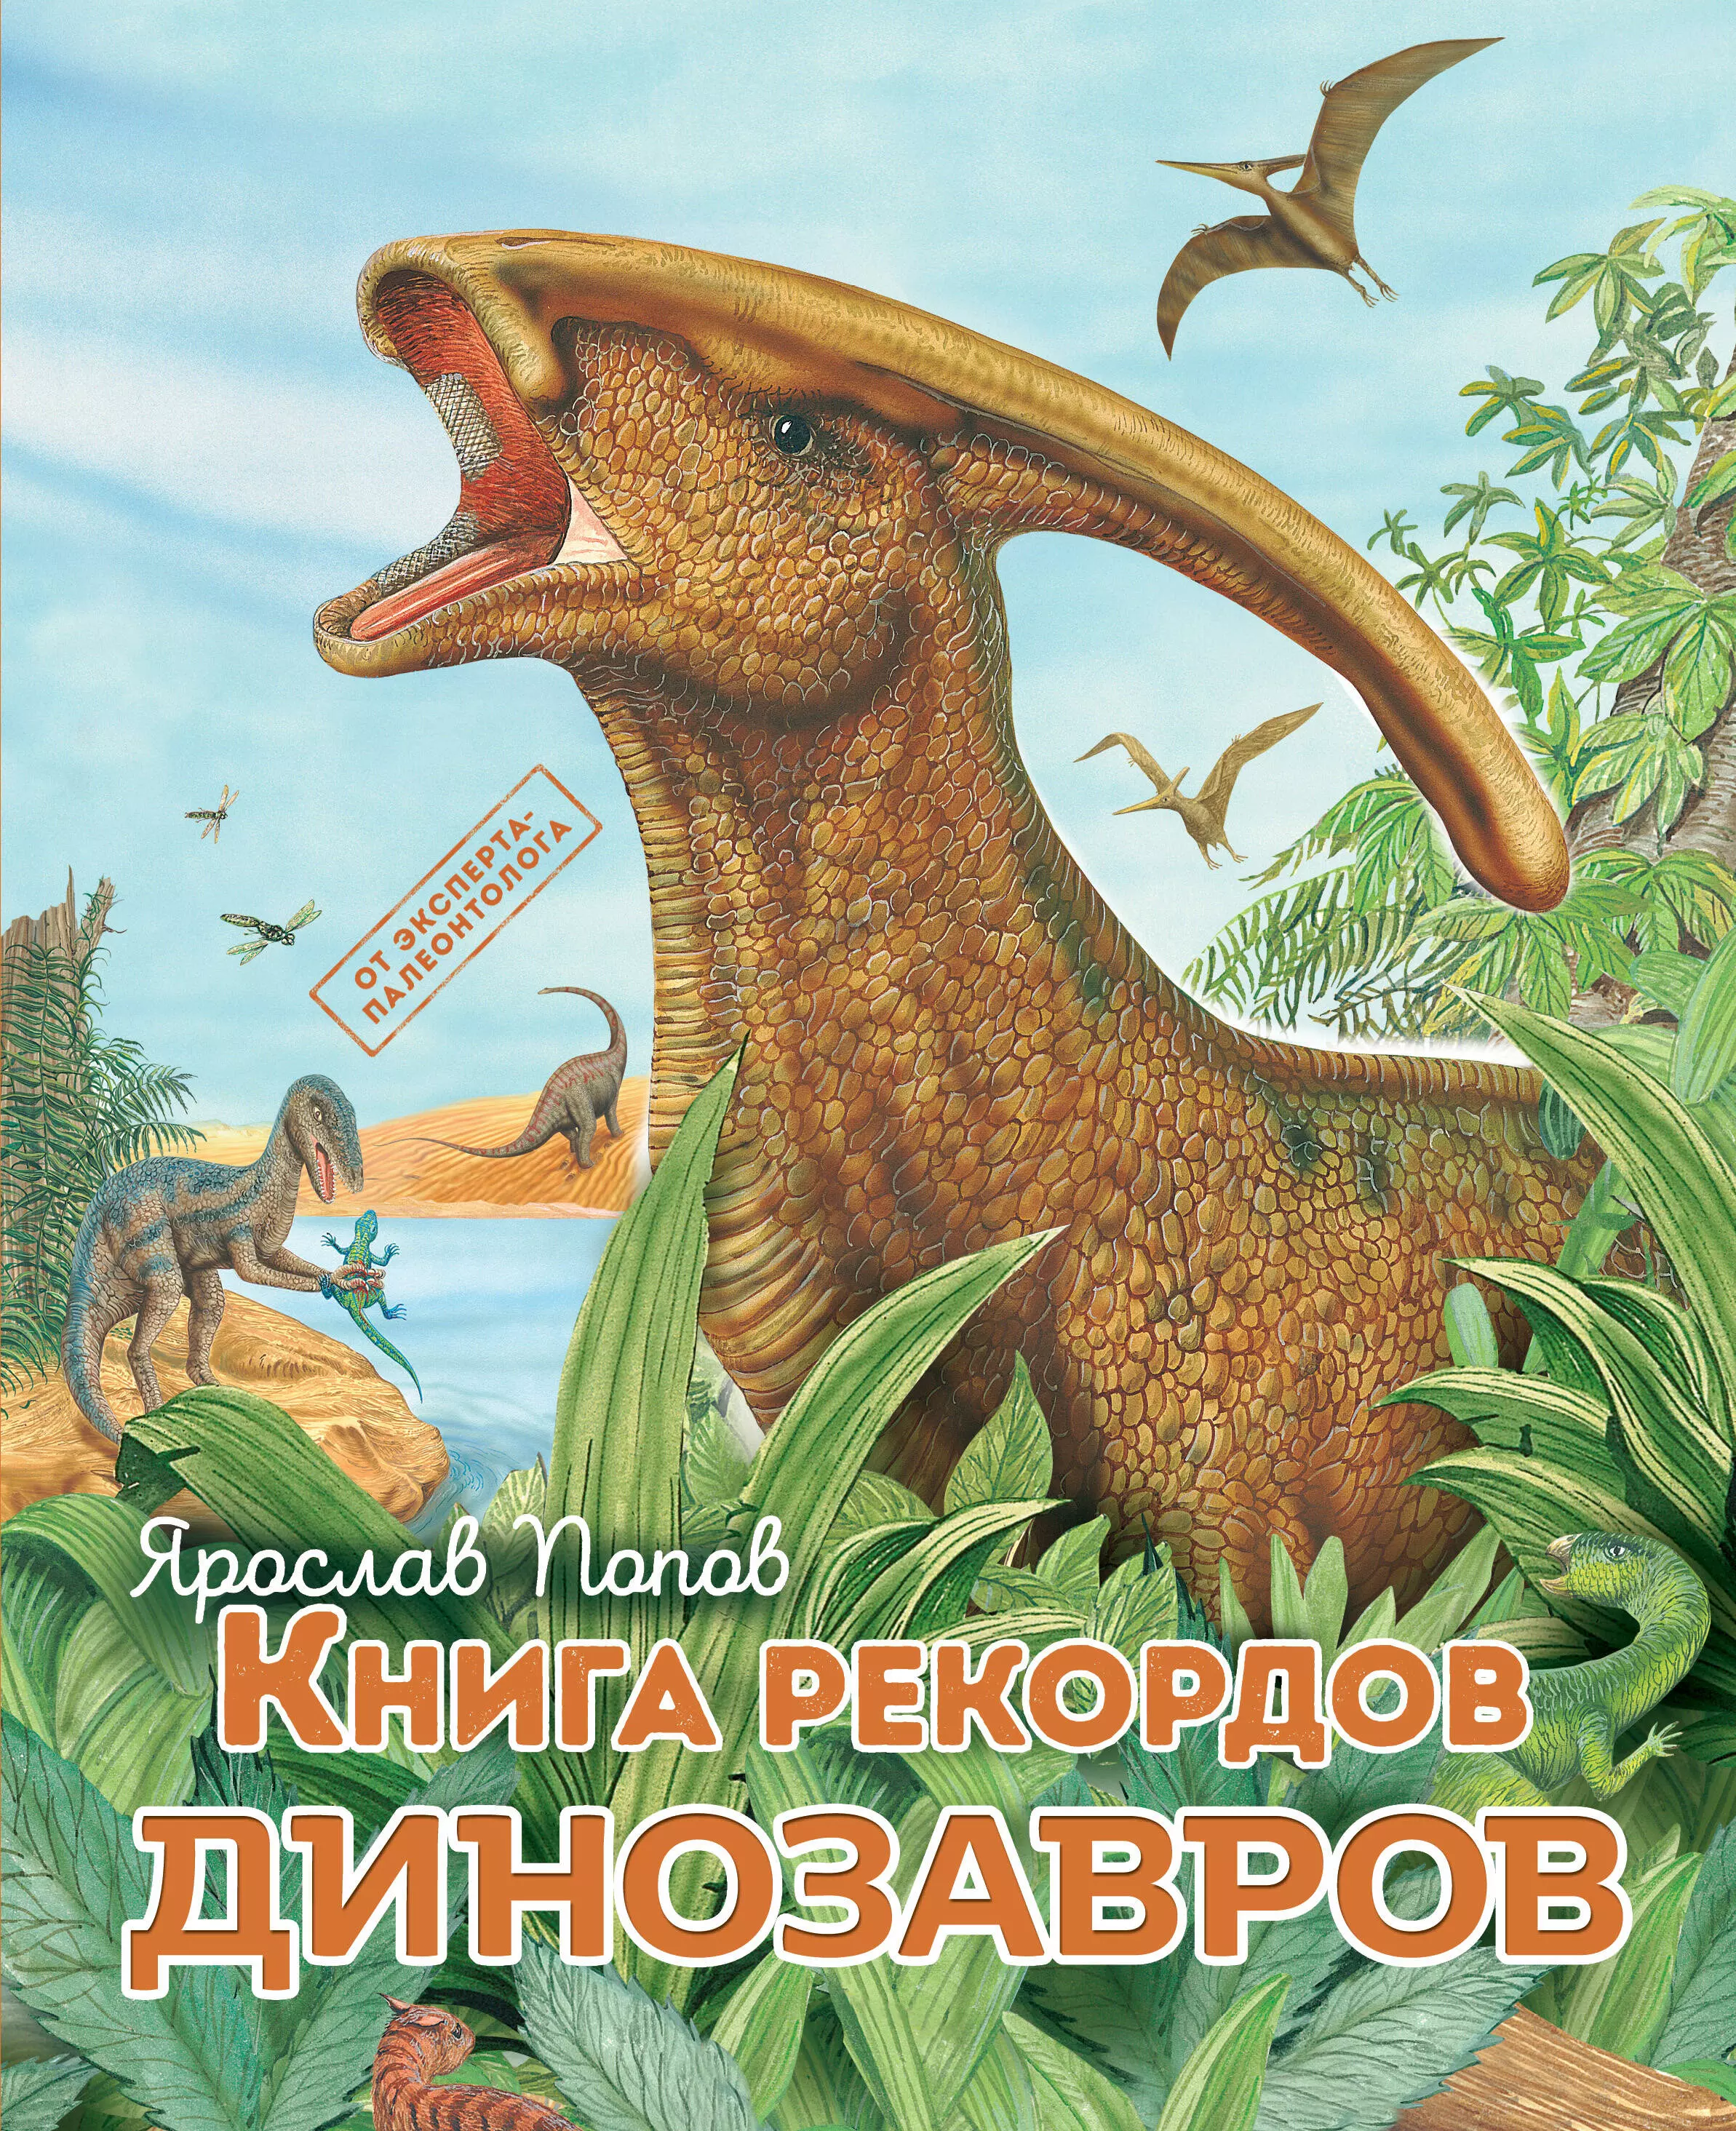 Попов Ярослав Александрович - Книга рекордов динозавров